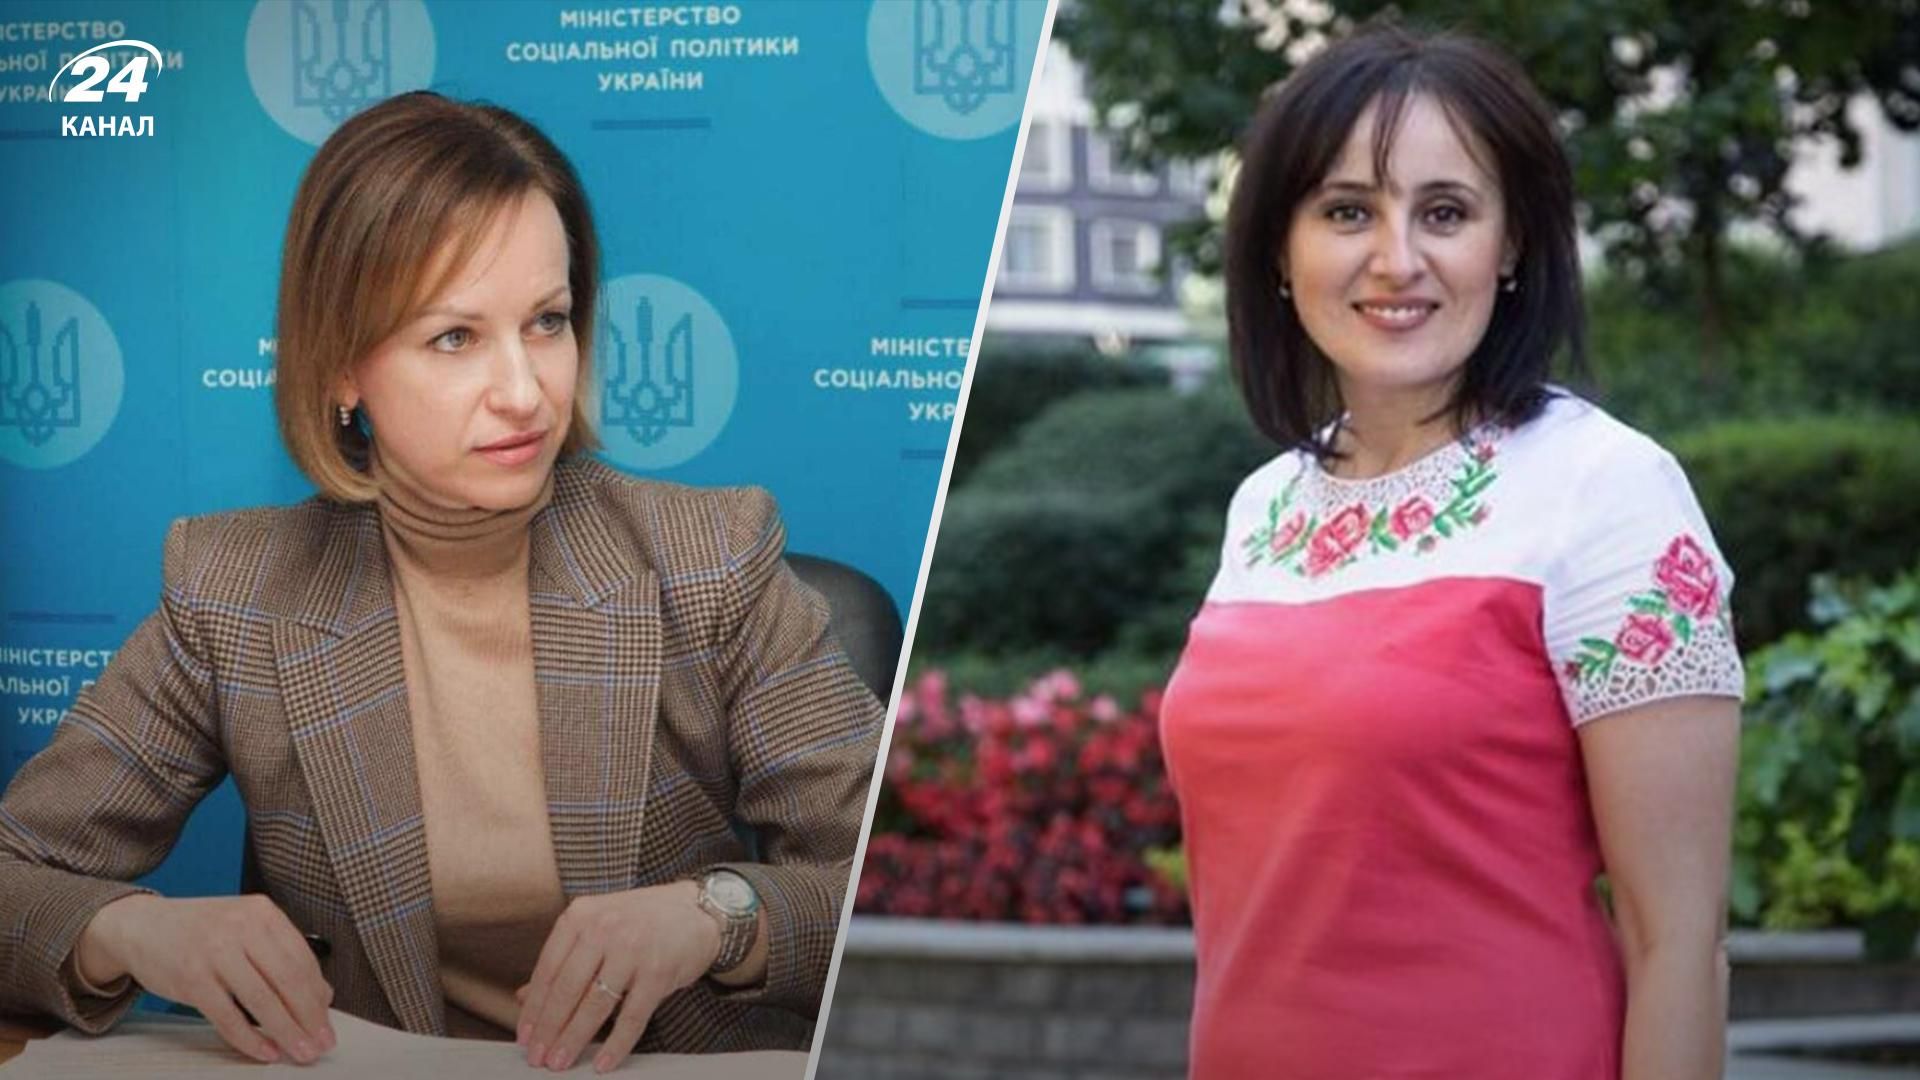 Оксана Жолнович может стать новым министерством соцполитики вместо Марины Лазебной